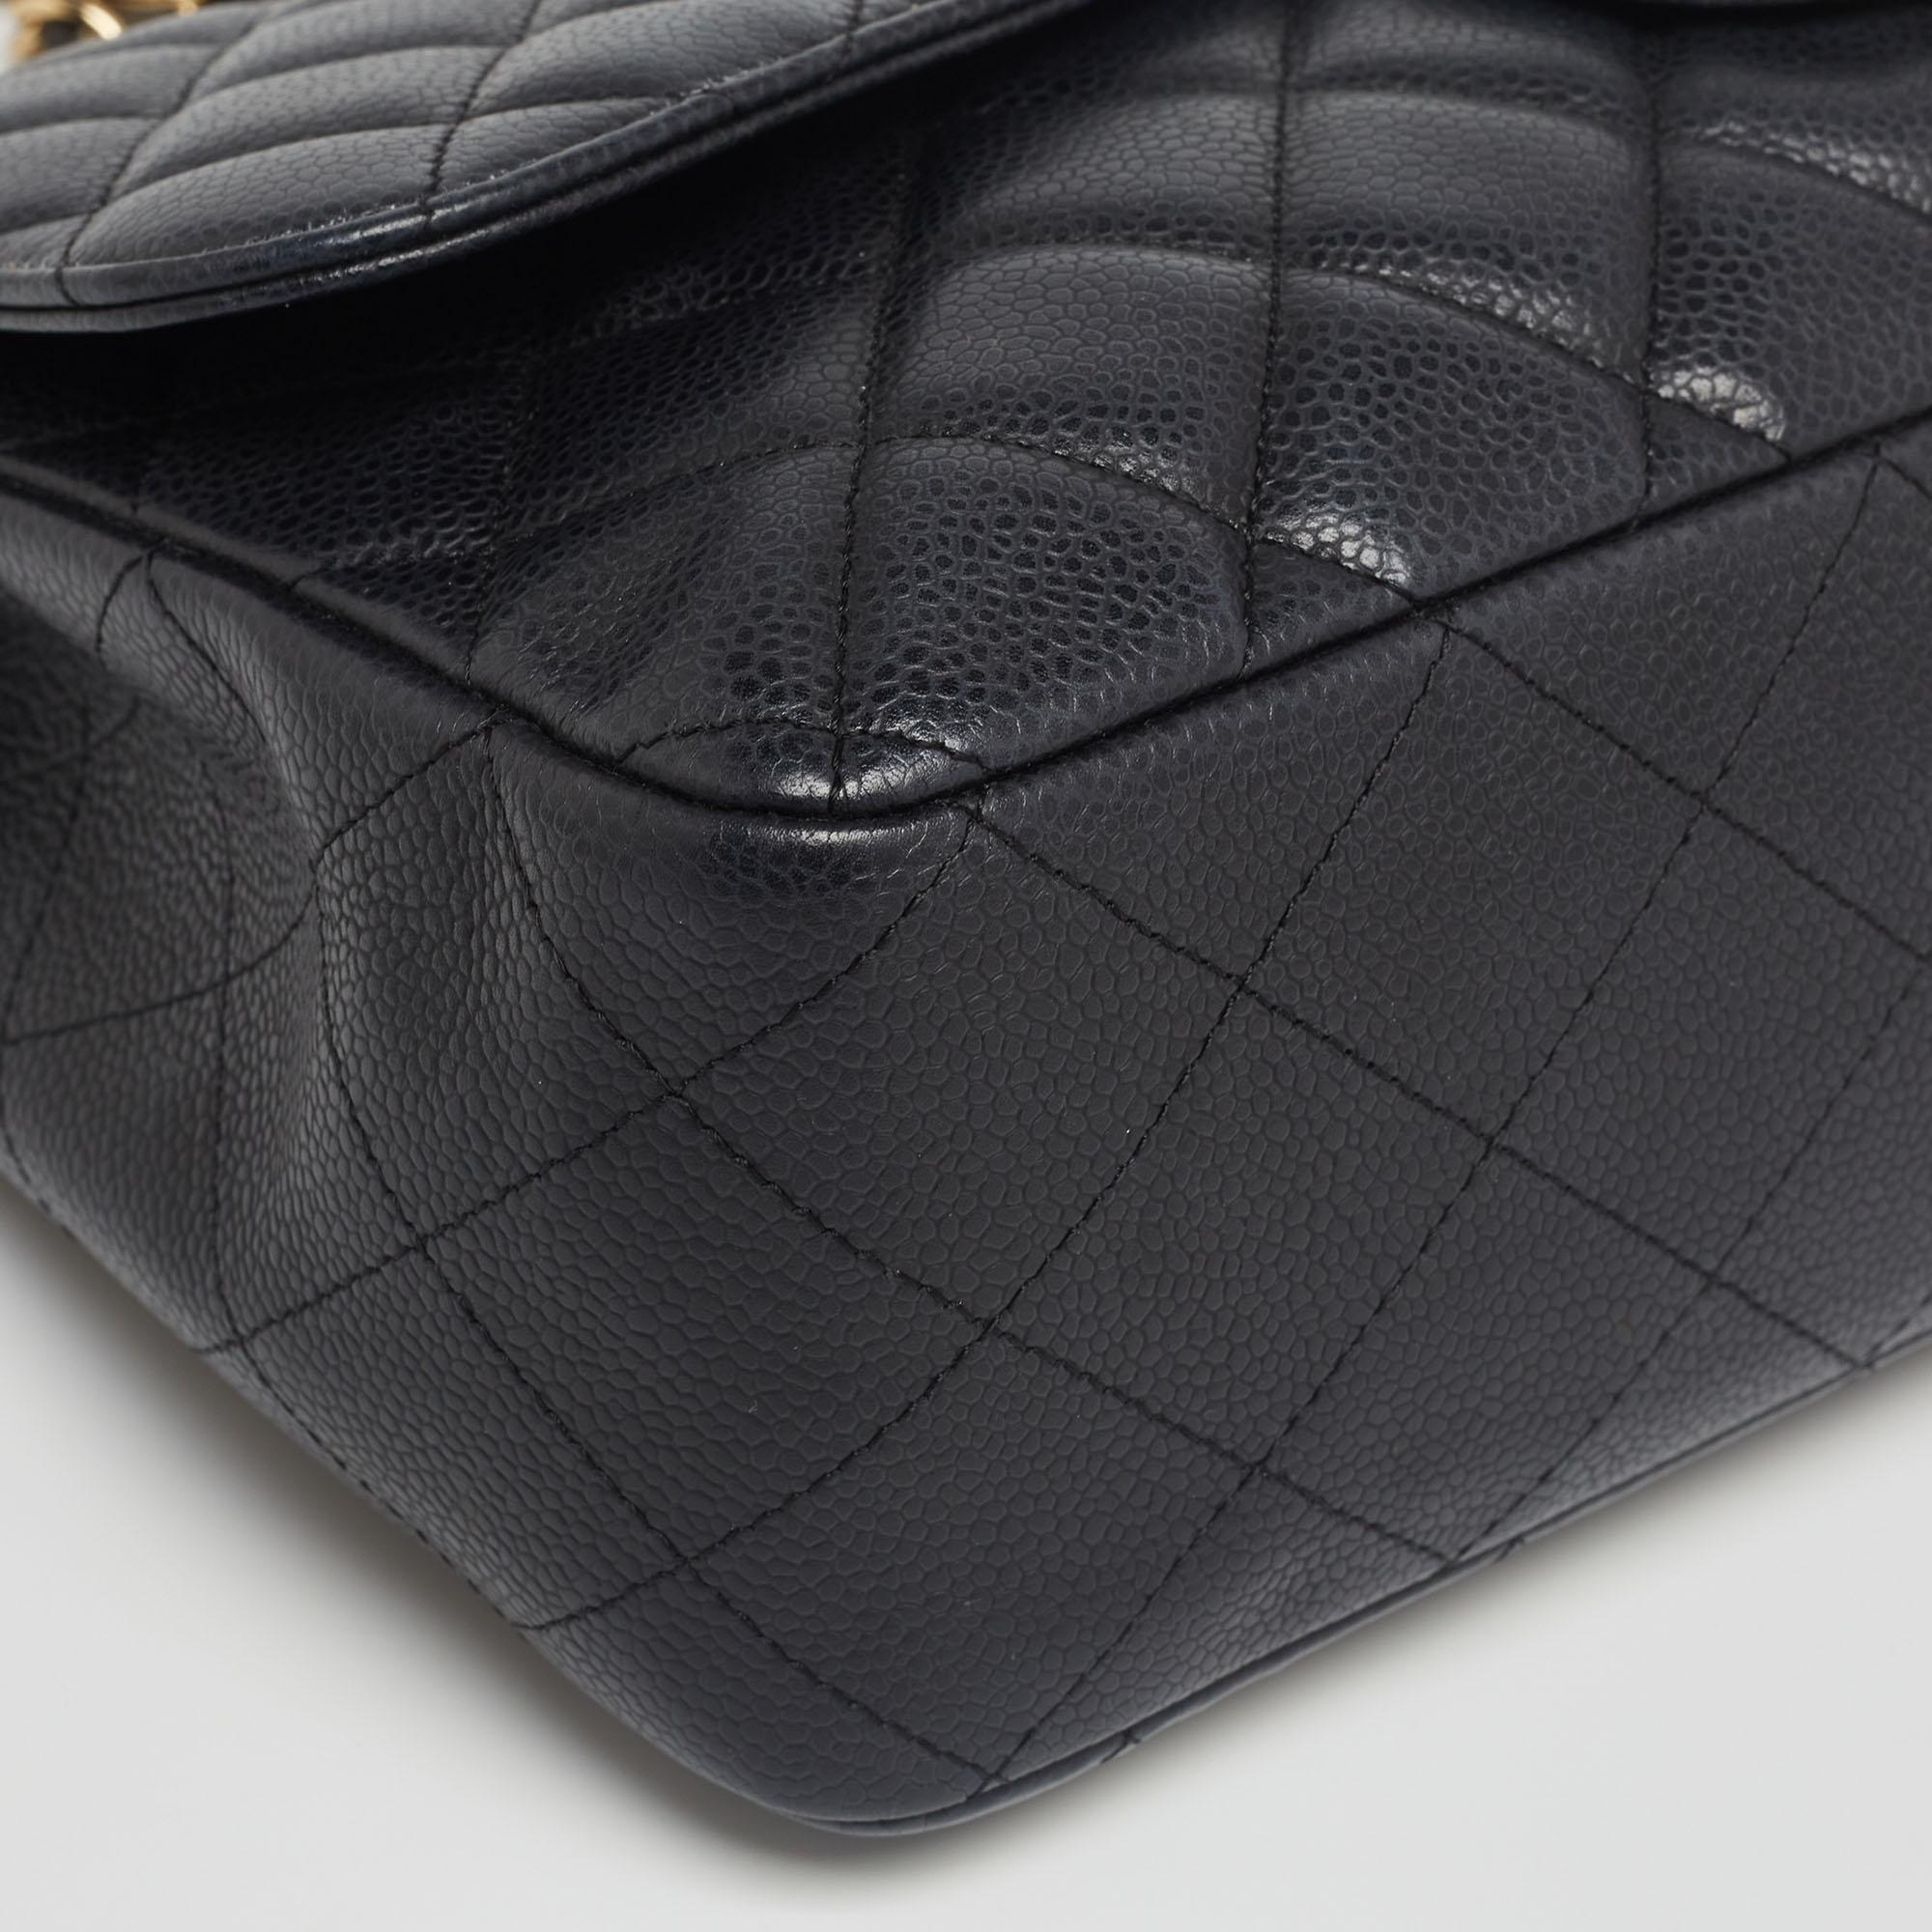 Chanel - Sac à rabat simple classique Jumbo en cuir texturé noir matelassé 3